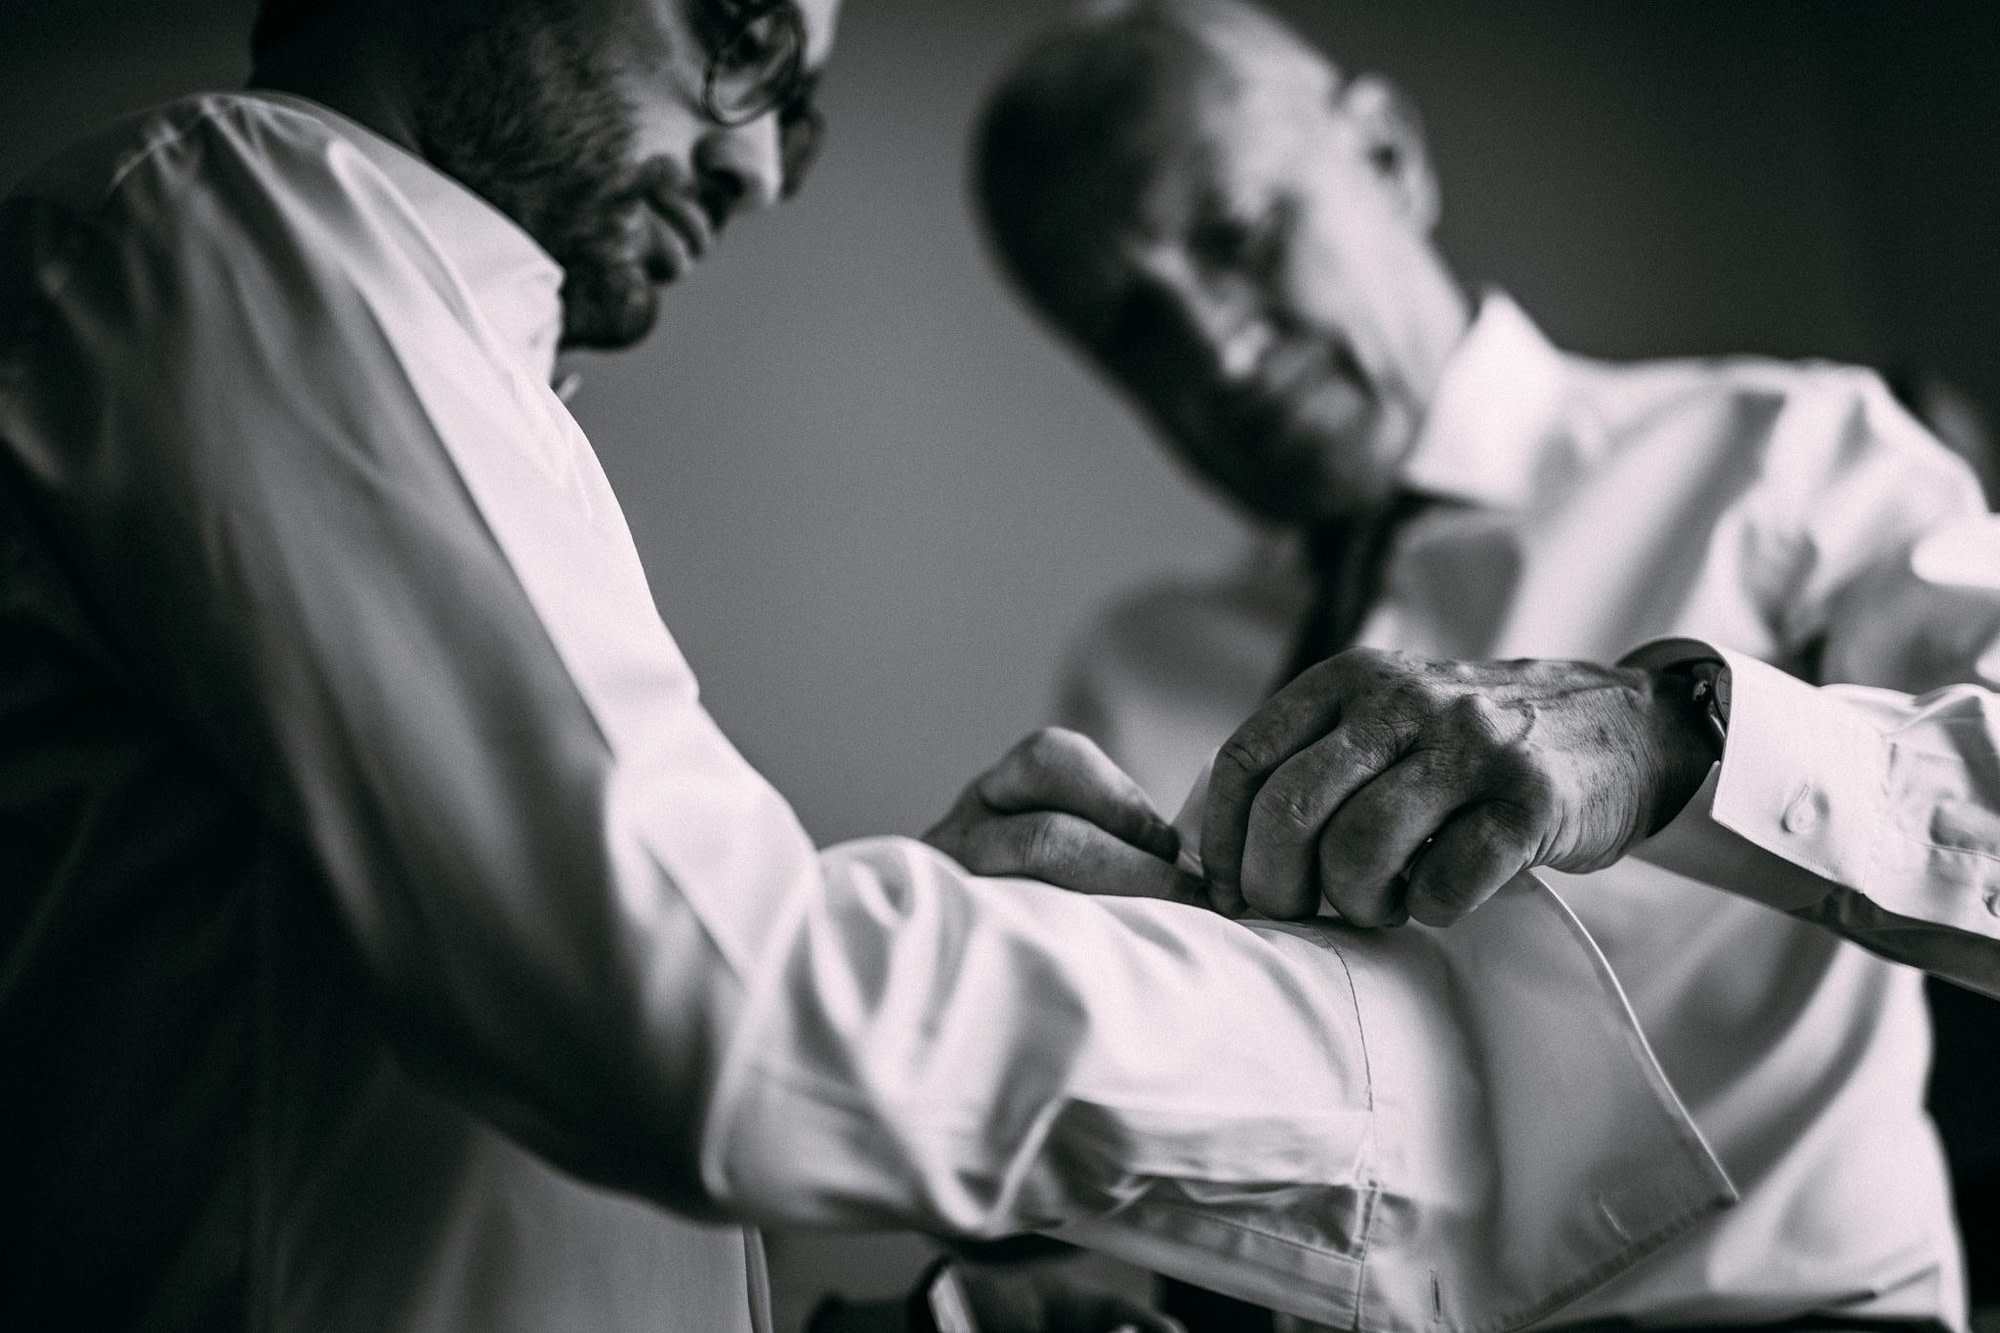 il padre aiuta lo sposo ad allacciare i polsini della camicia in preparazione al matrimonio